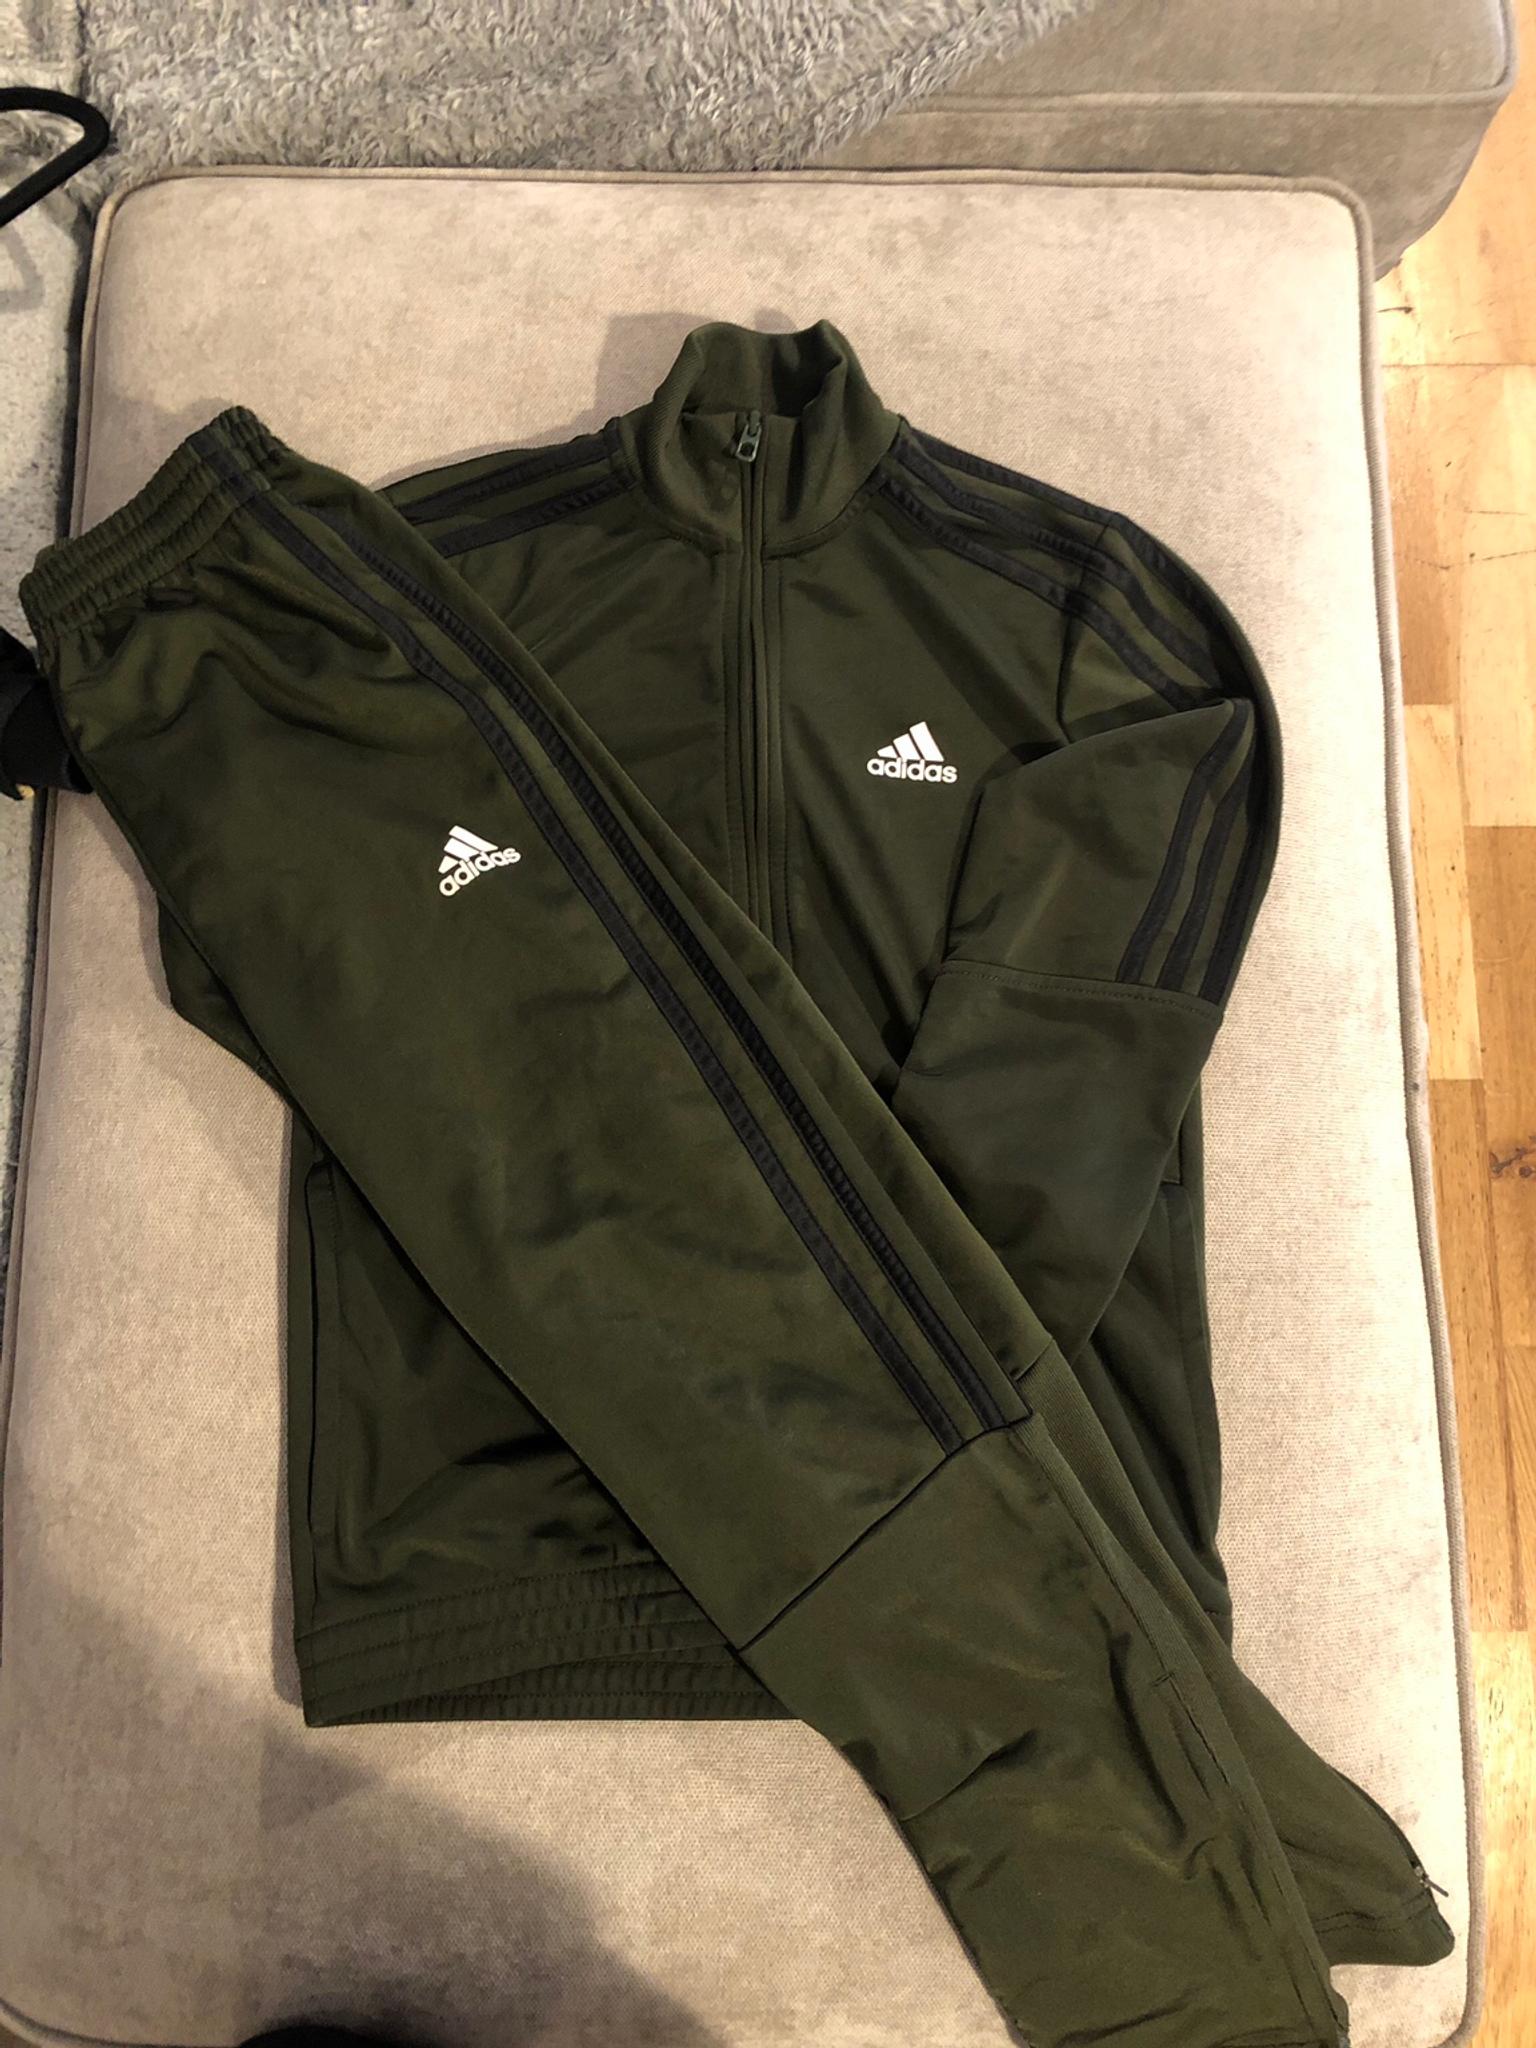 khaki green adidas jacket